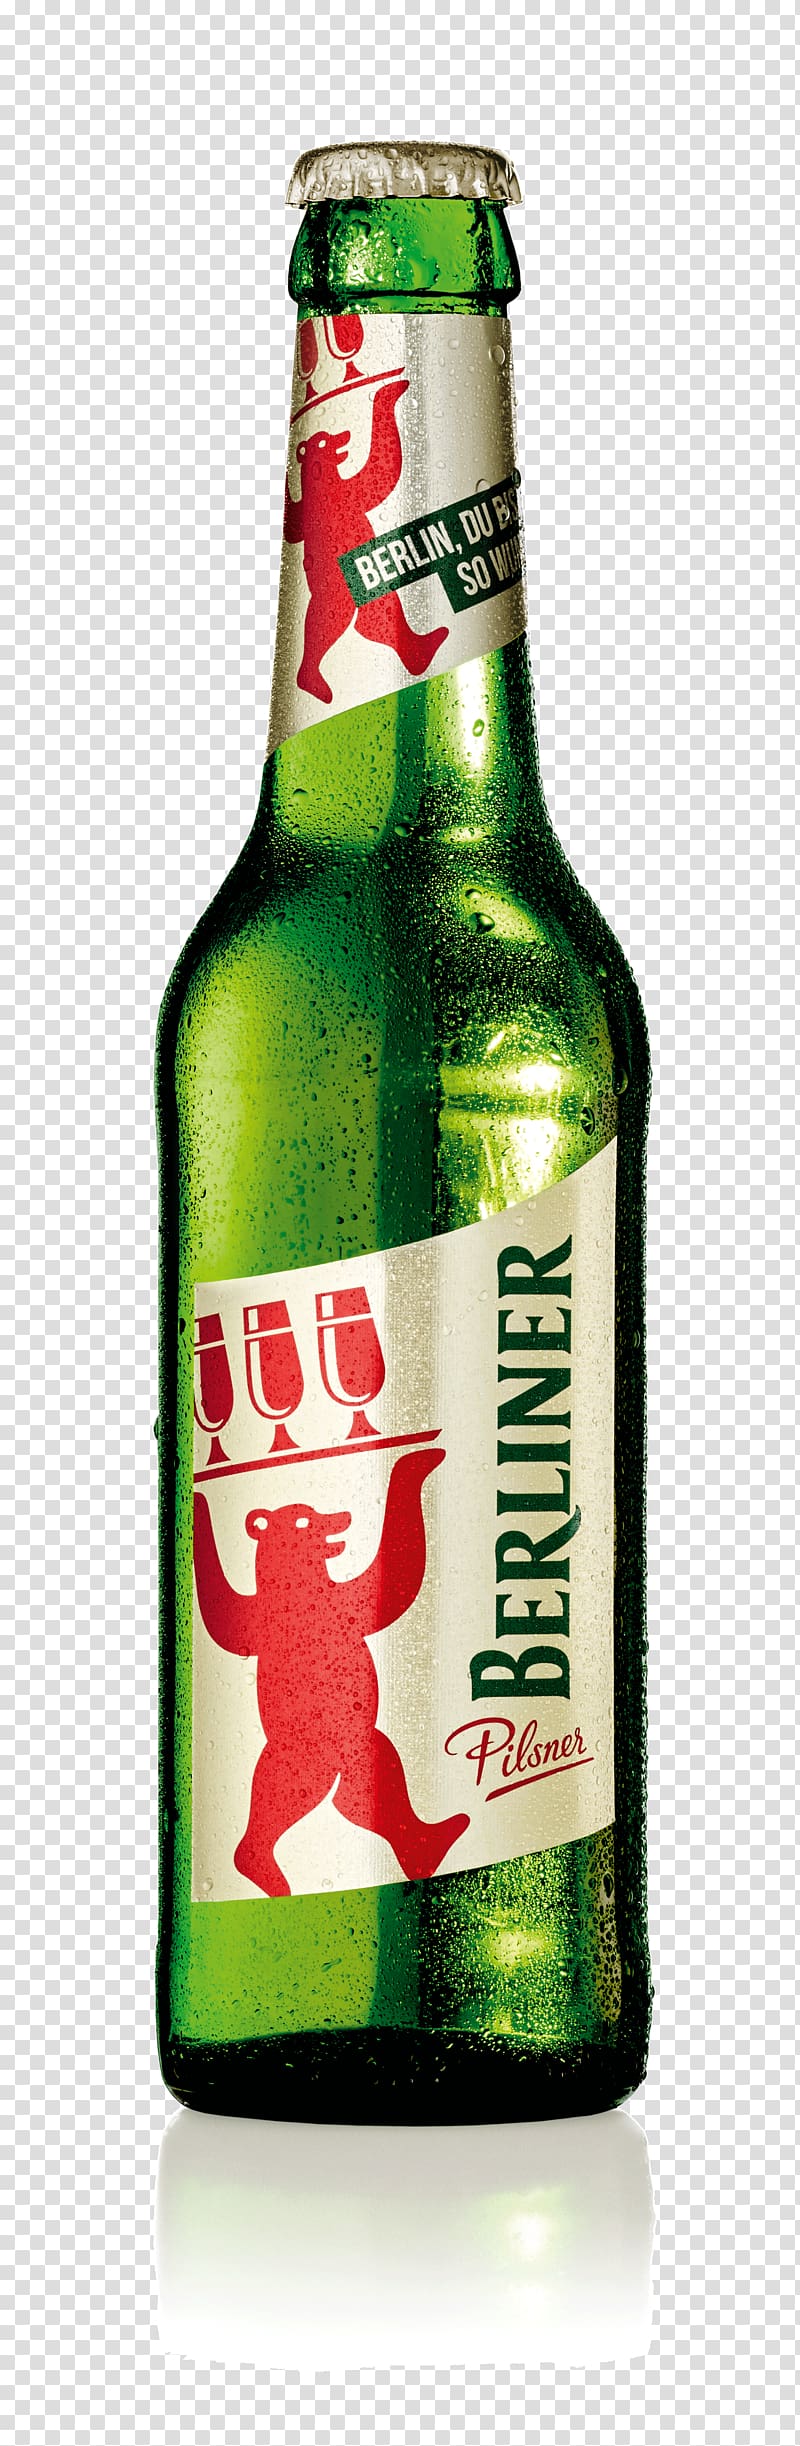 Lager Berliner Pilsner Beer bottle, beer transparent background PNG clipart